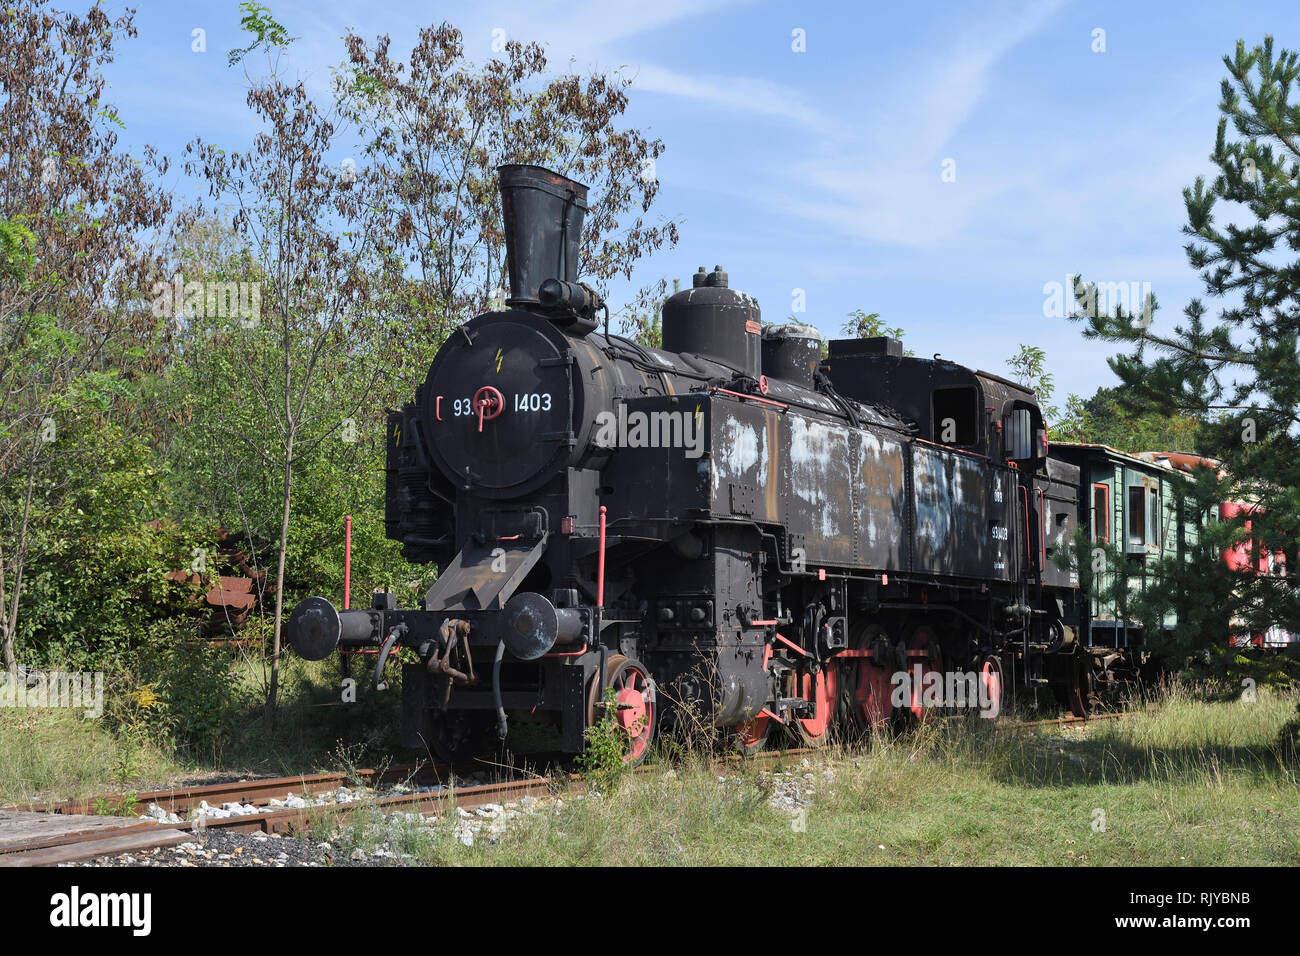 eisenbahnmuseum;das heizhaus;strasshof;vienna;austria;steam locomotive;93.1403 Stock Photo